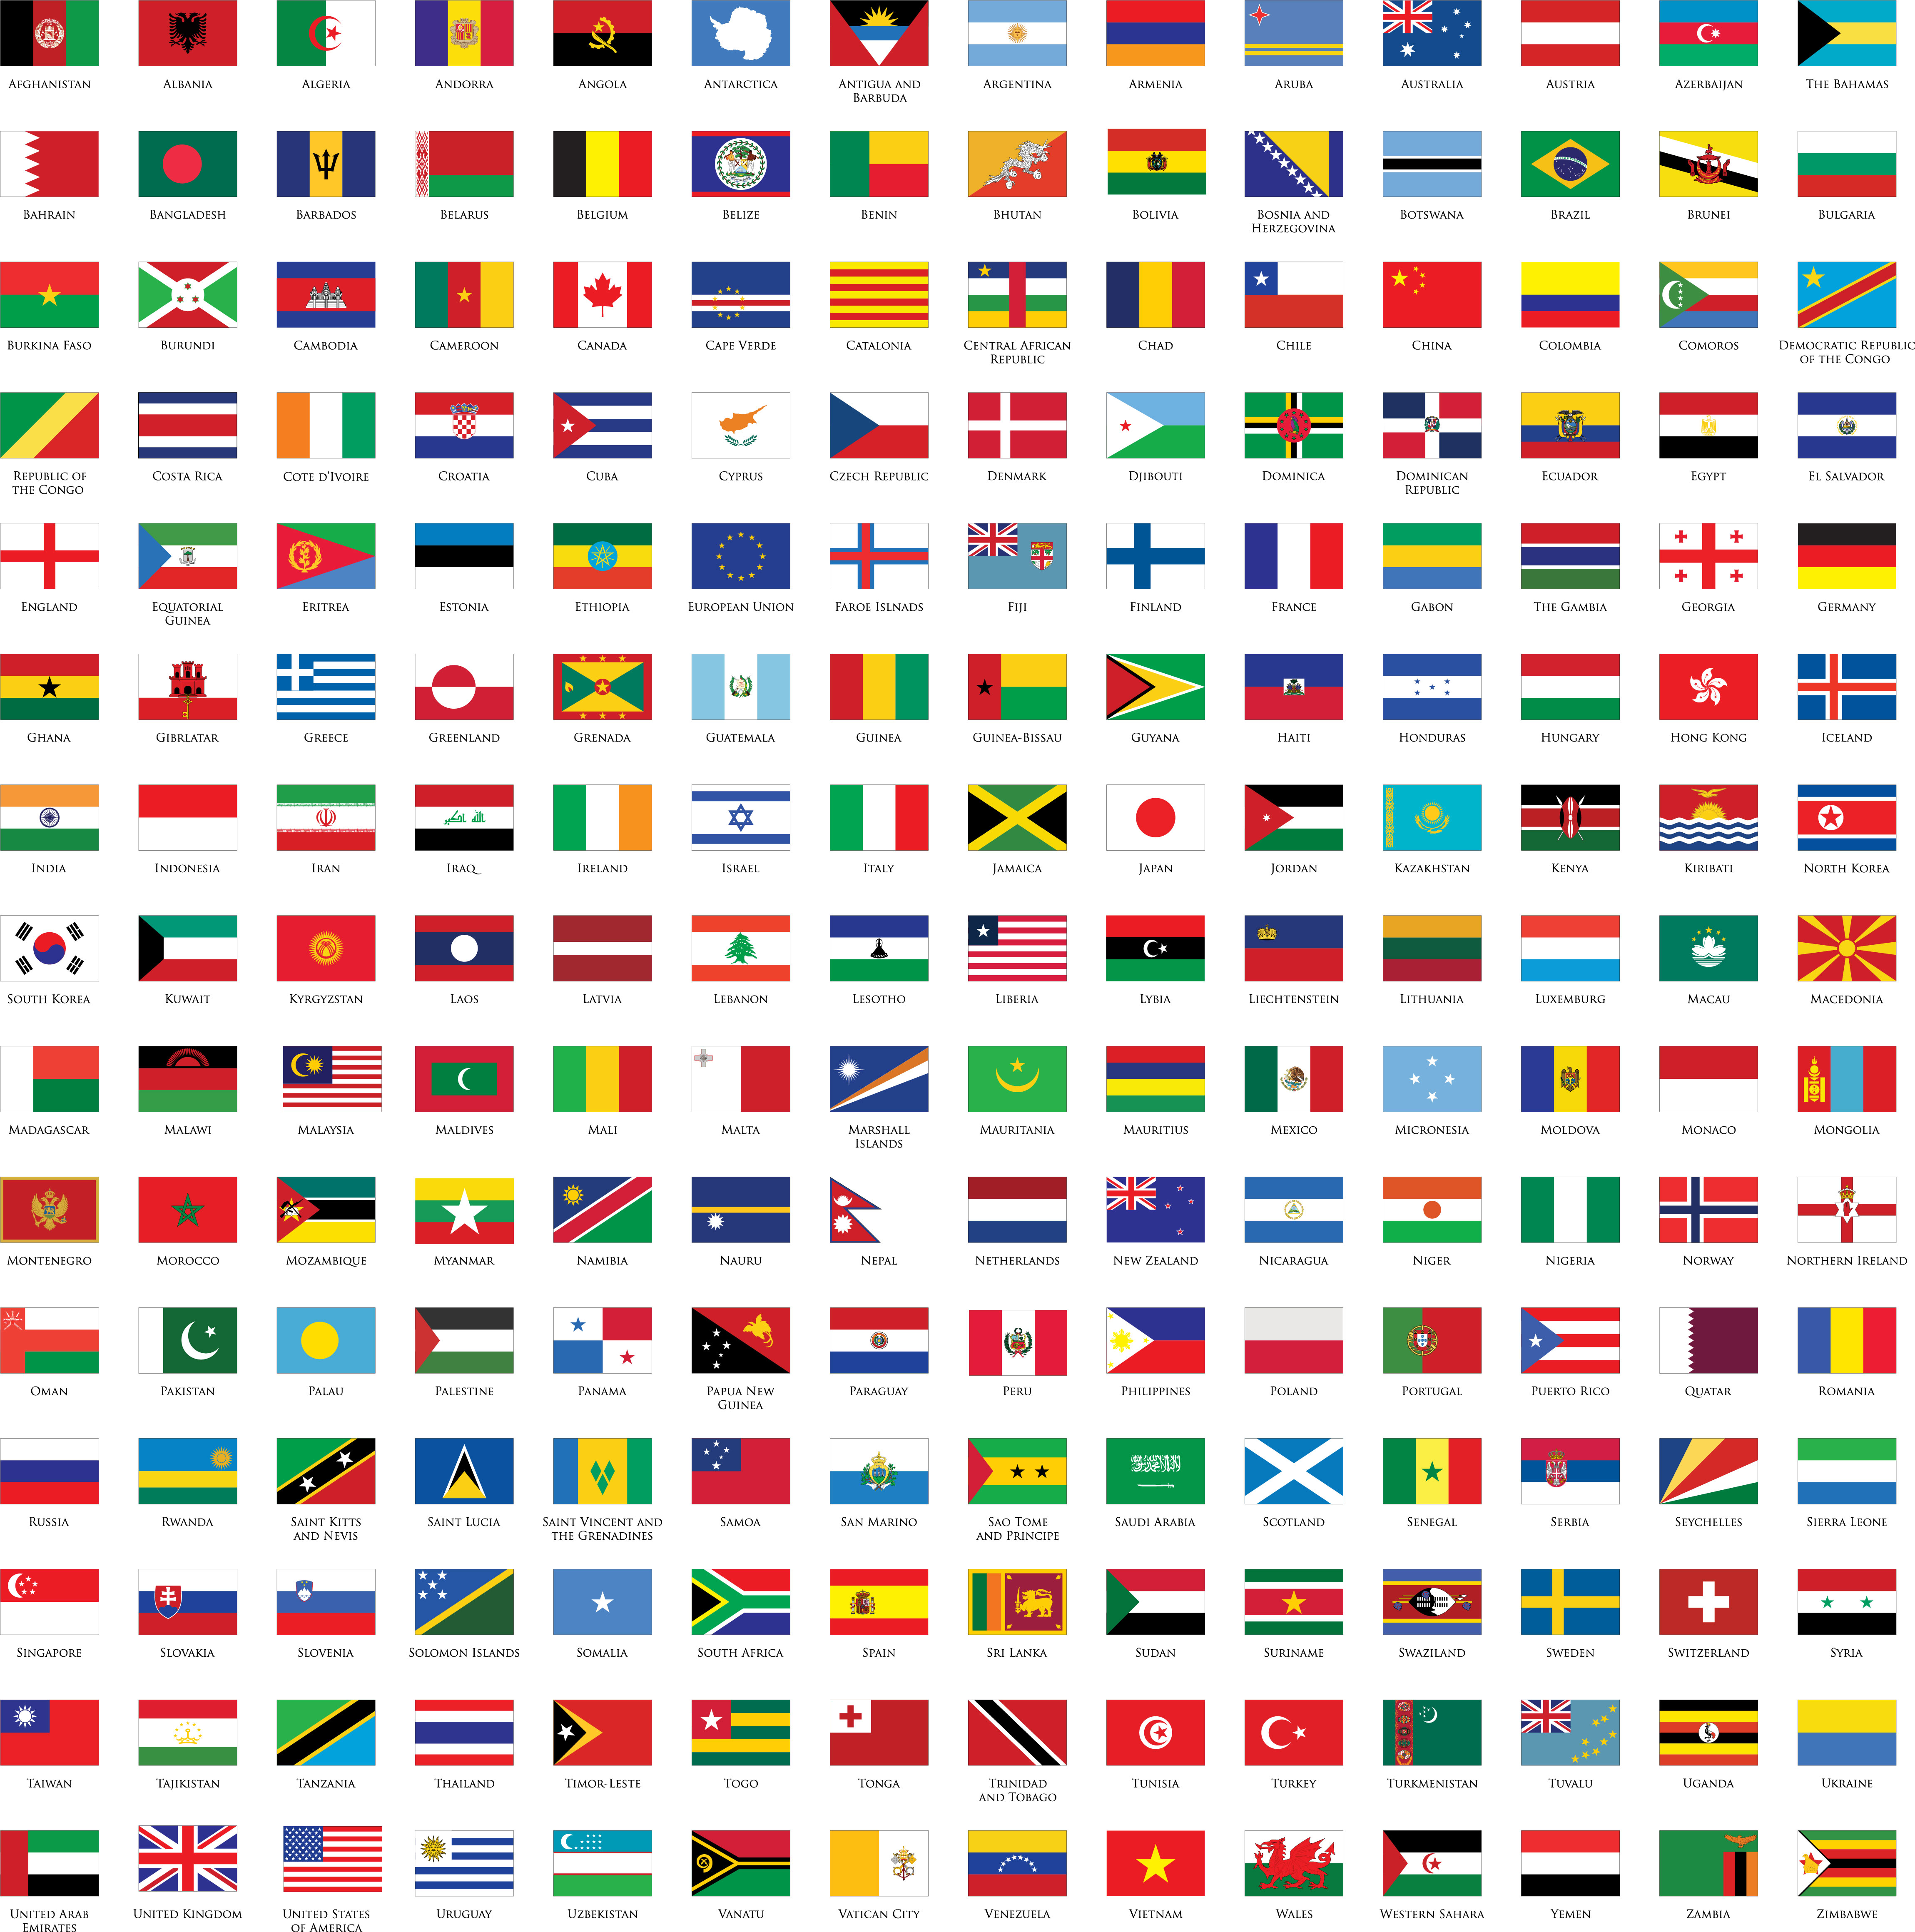 Cờ quốc gia là biểu tượng văn hóa và tinh thần của một quốc gia. Và hiện nay, chúng ta có thể tìm thấy các loại cờ quốc gia với nhiều kích thước và mức giá khác nhau. Hãy lựa chọn cho mình một chiếc cờ quốc gia giá rẻ để hiện thị tình yêu đối với đất nước một cách thật trọn vẹn và ý nghĩa.